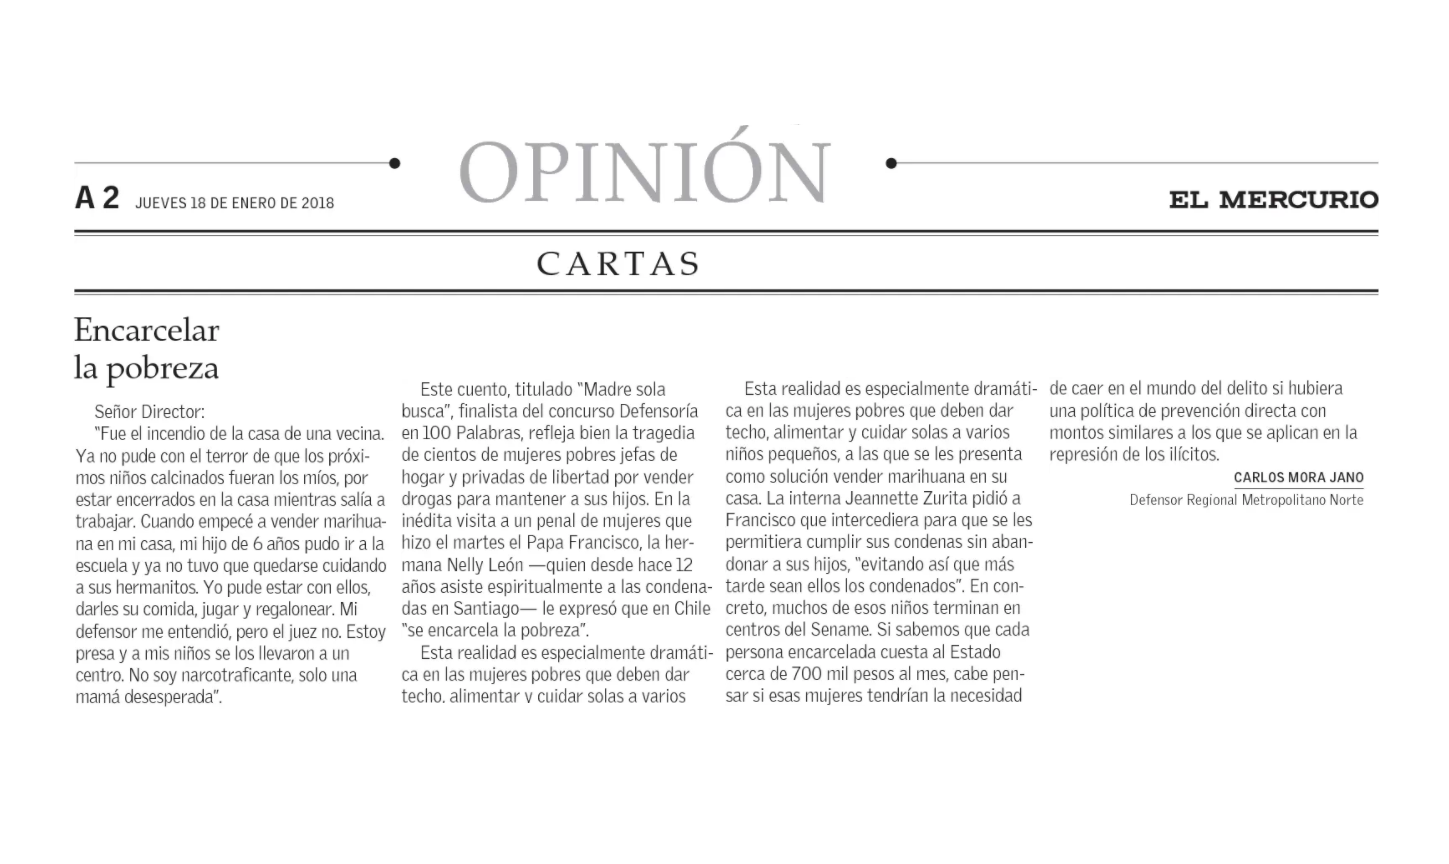 El Mercurio publicó lacarta del Defensor Regional Carlos Mora, referida a la visita del Papa Francisco a la Cárcel de Mujeres.